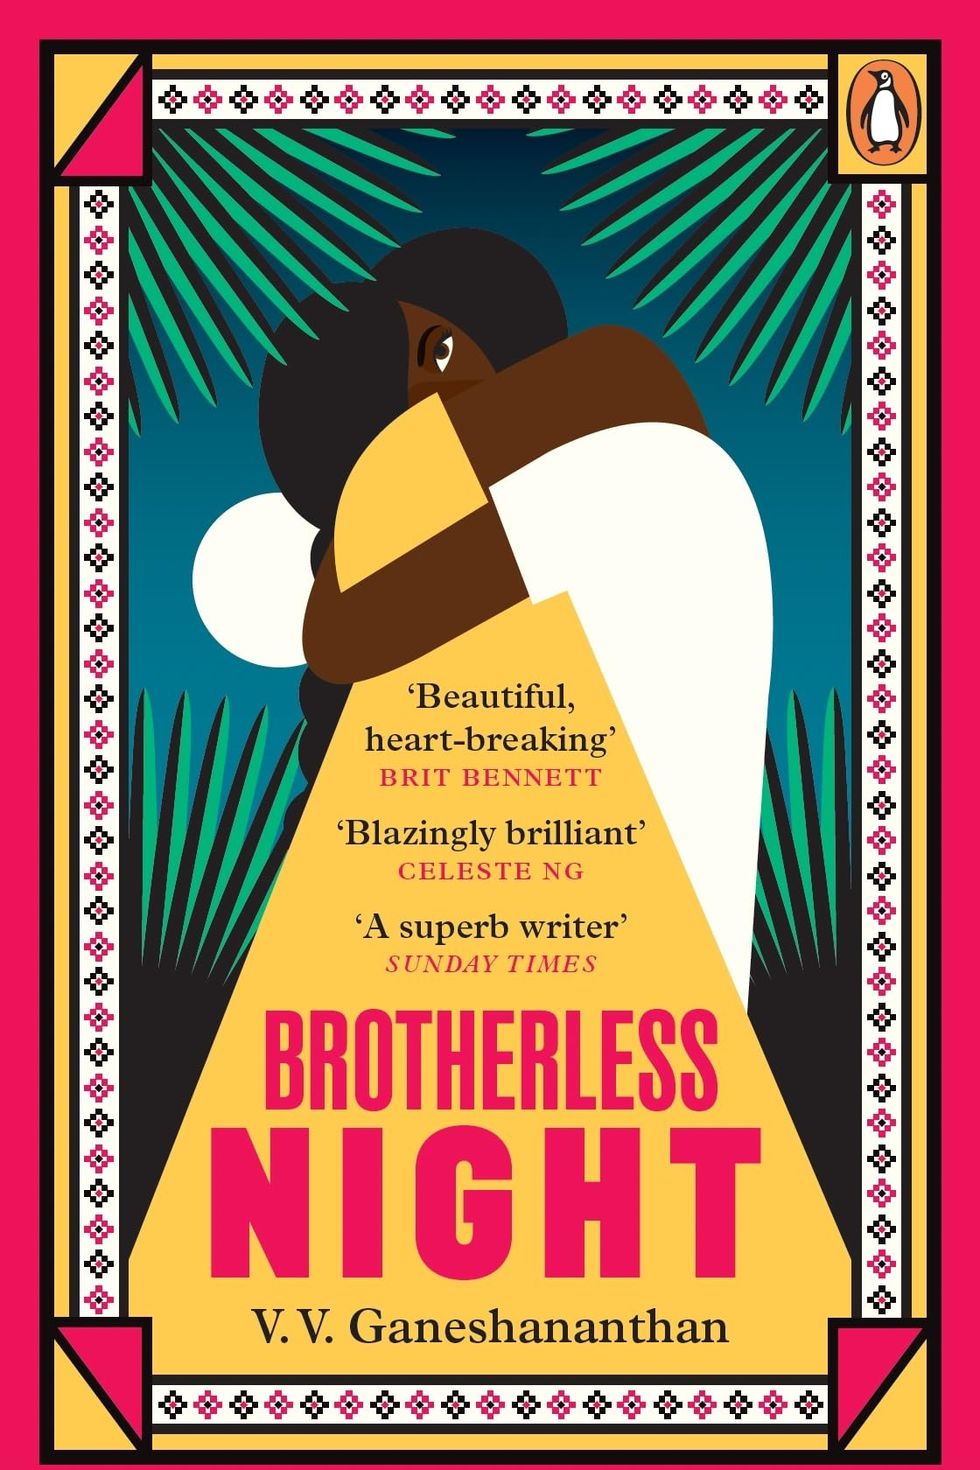 V.V. Ganeshananthan, 'Brotherless Night'